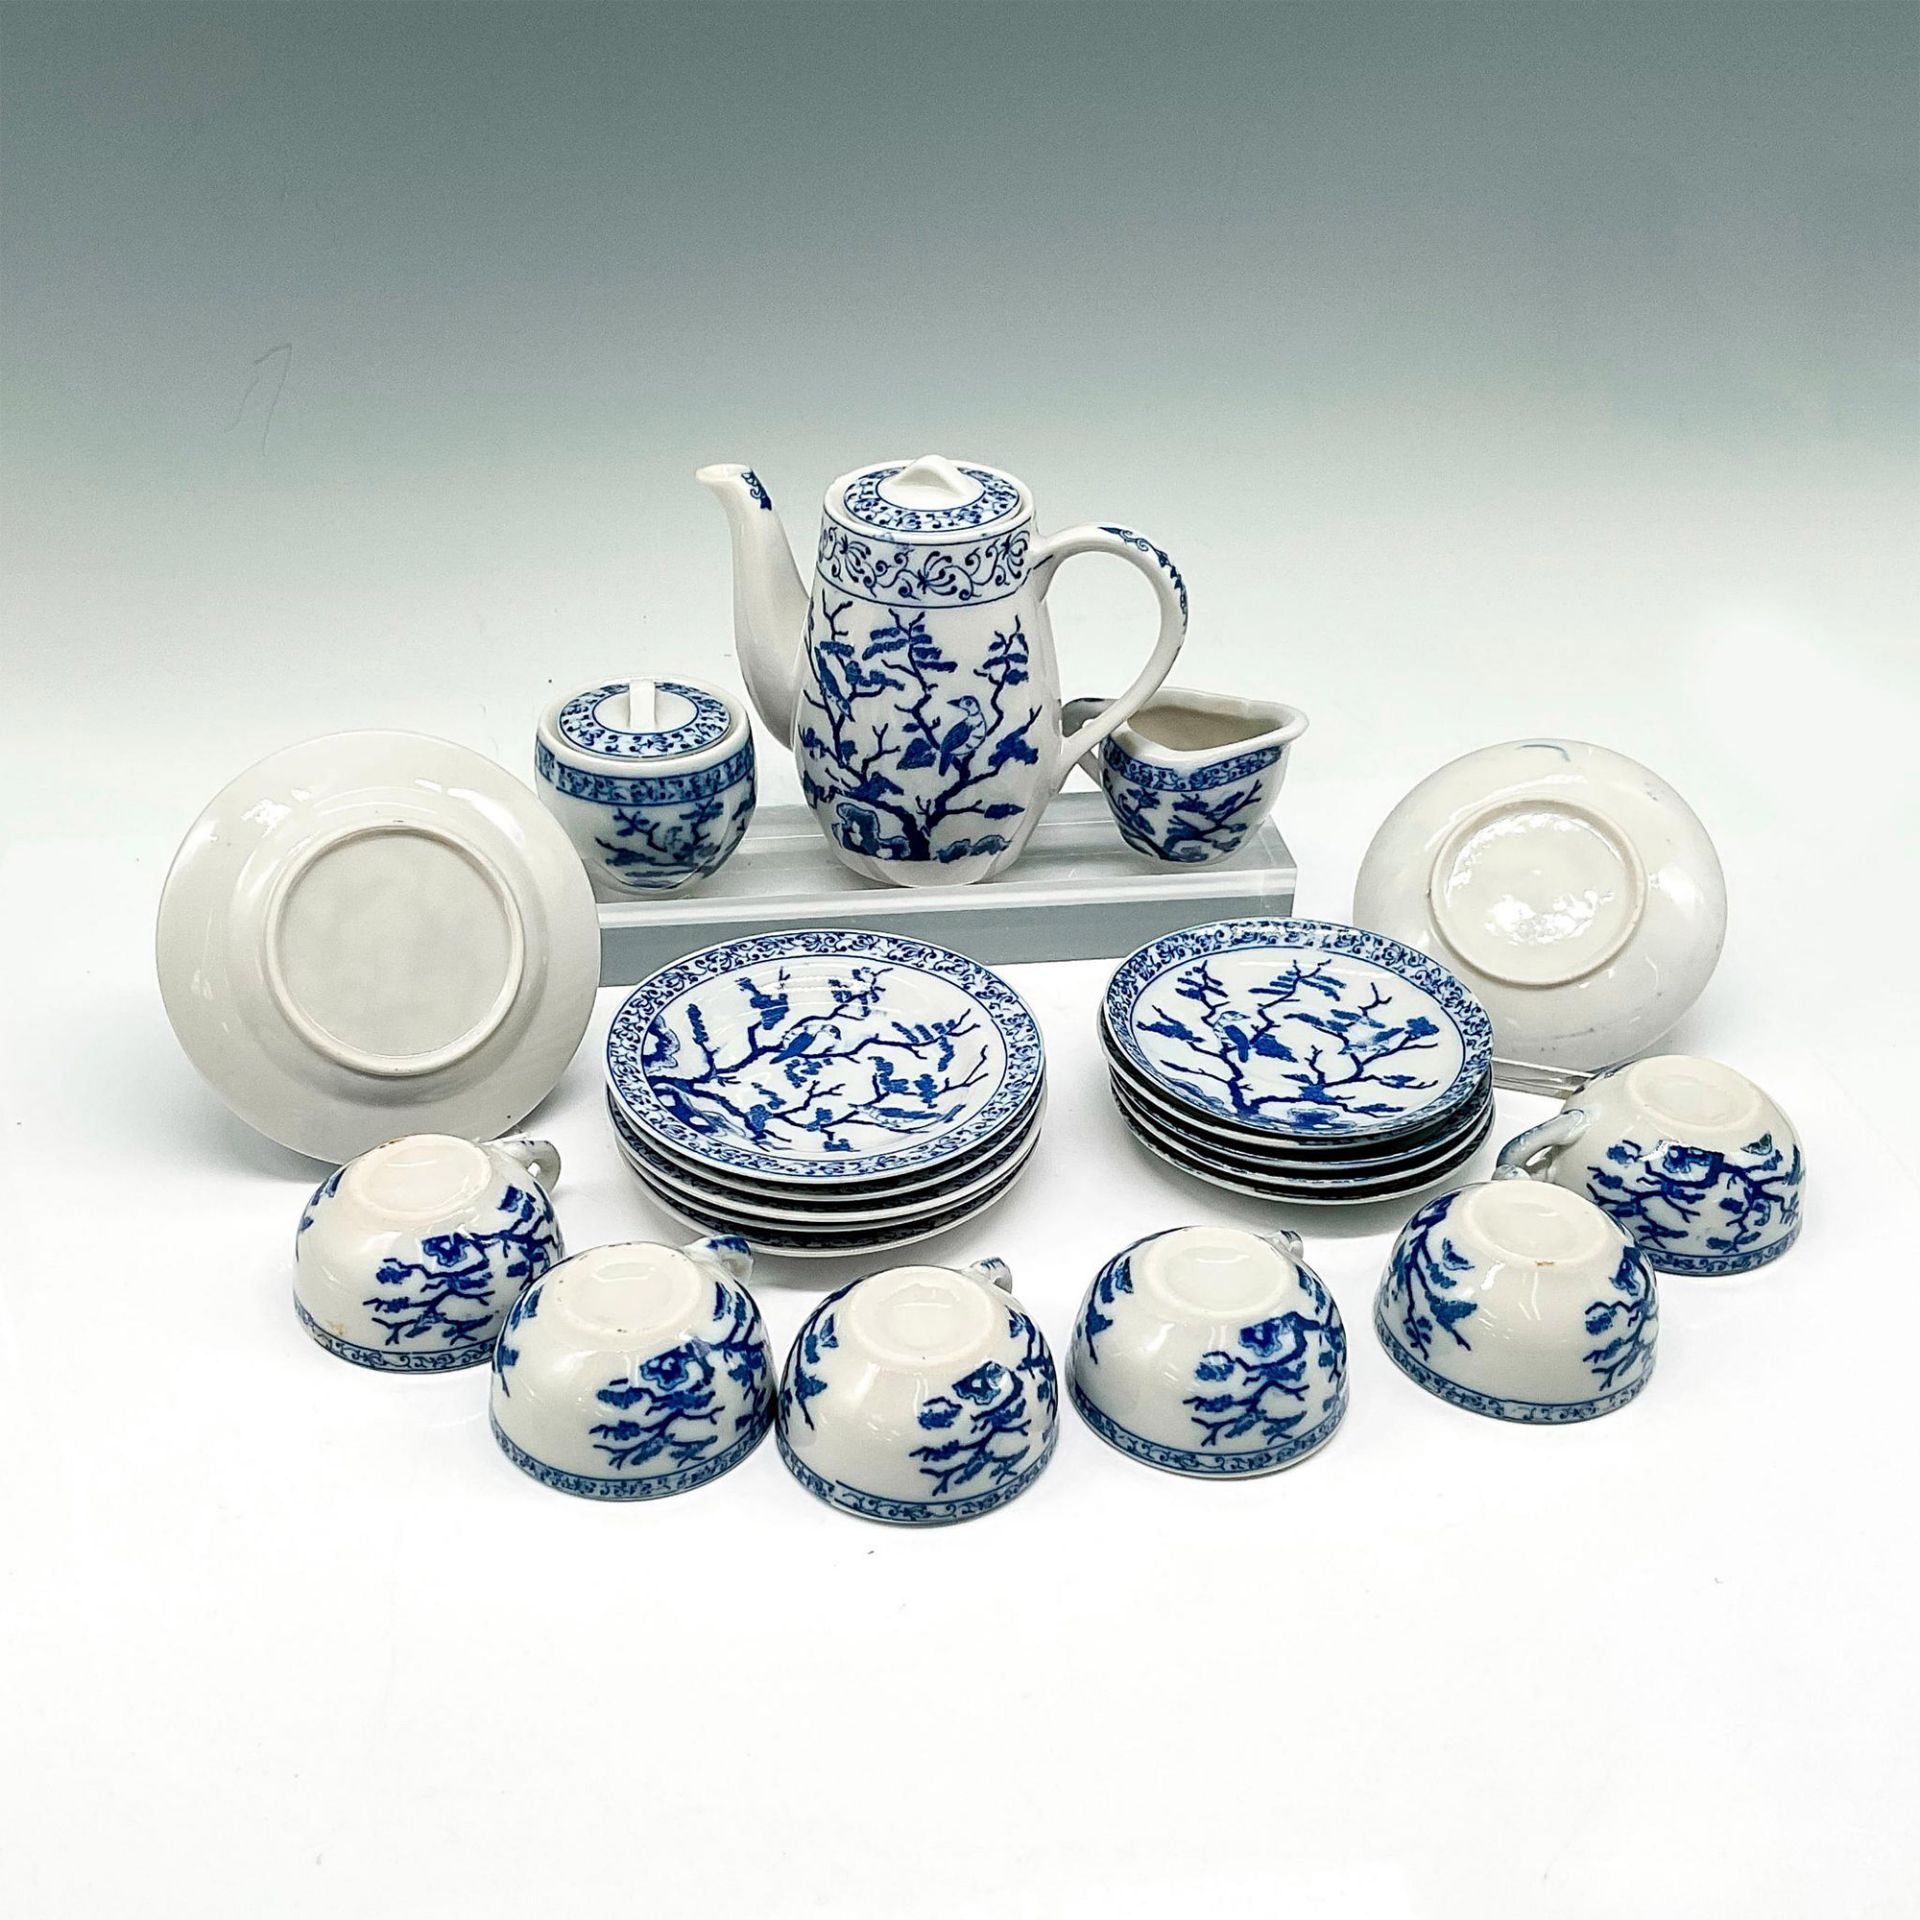 17pc Vintage Collectible Porcelain Child's Tea Set - Image 3 of 3